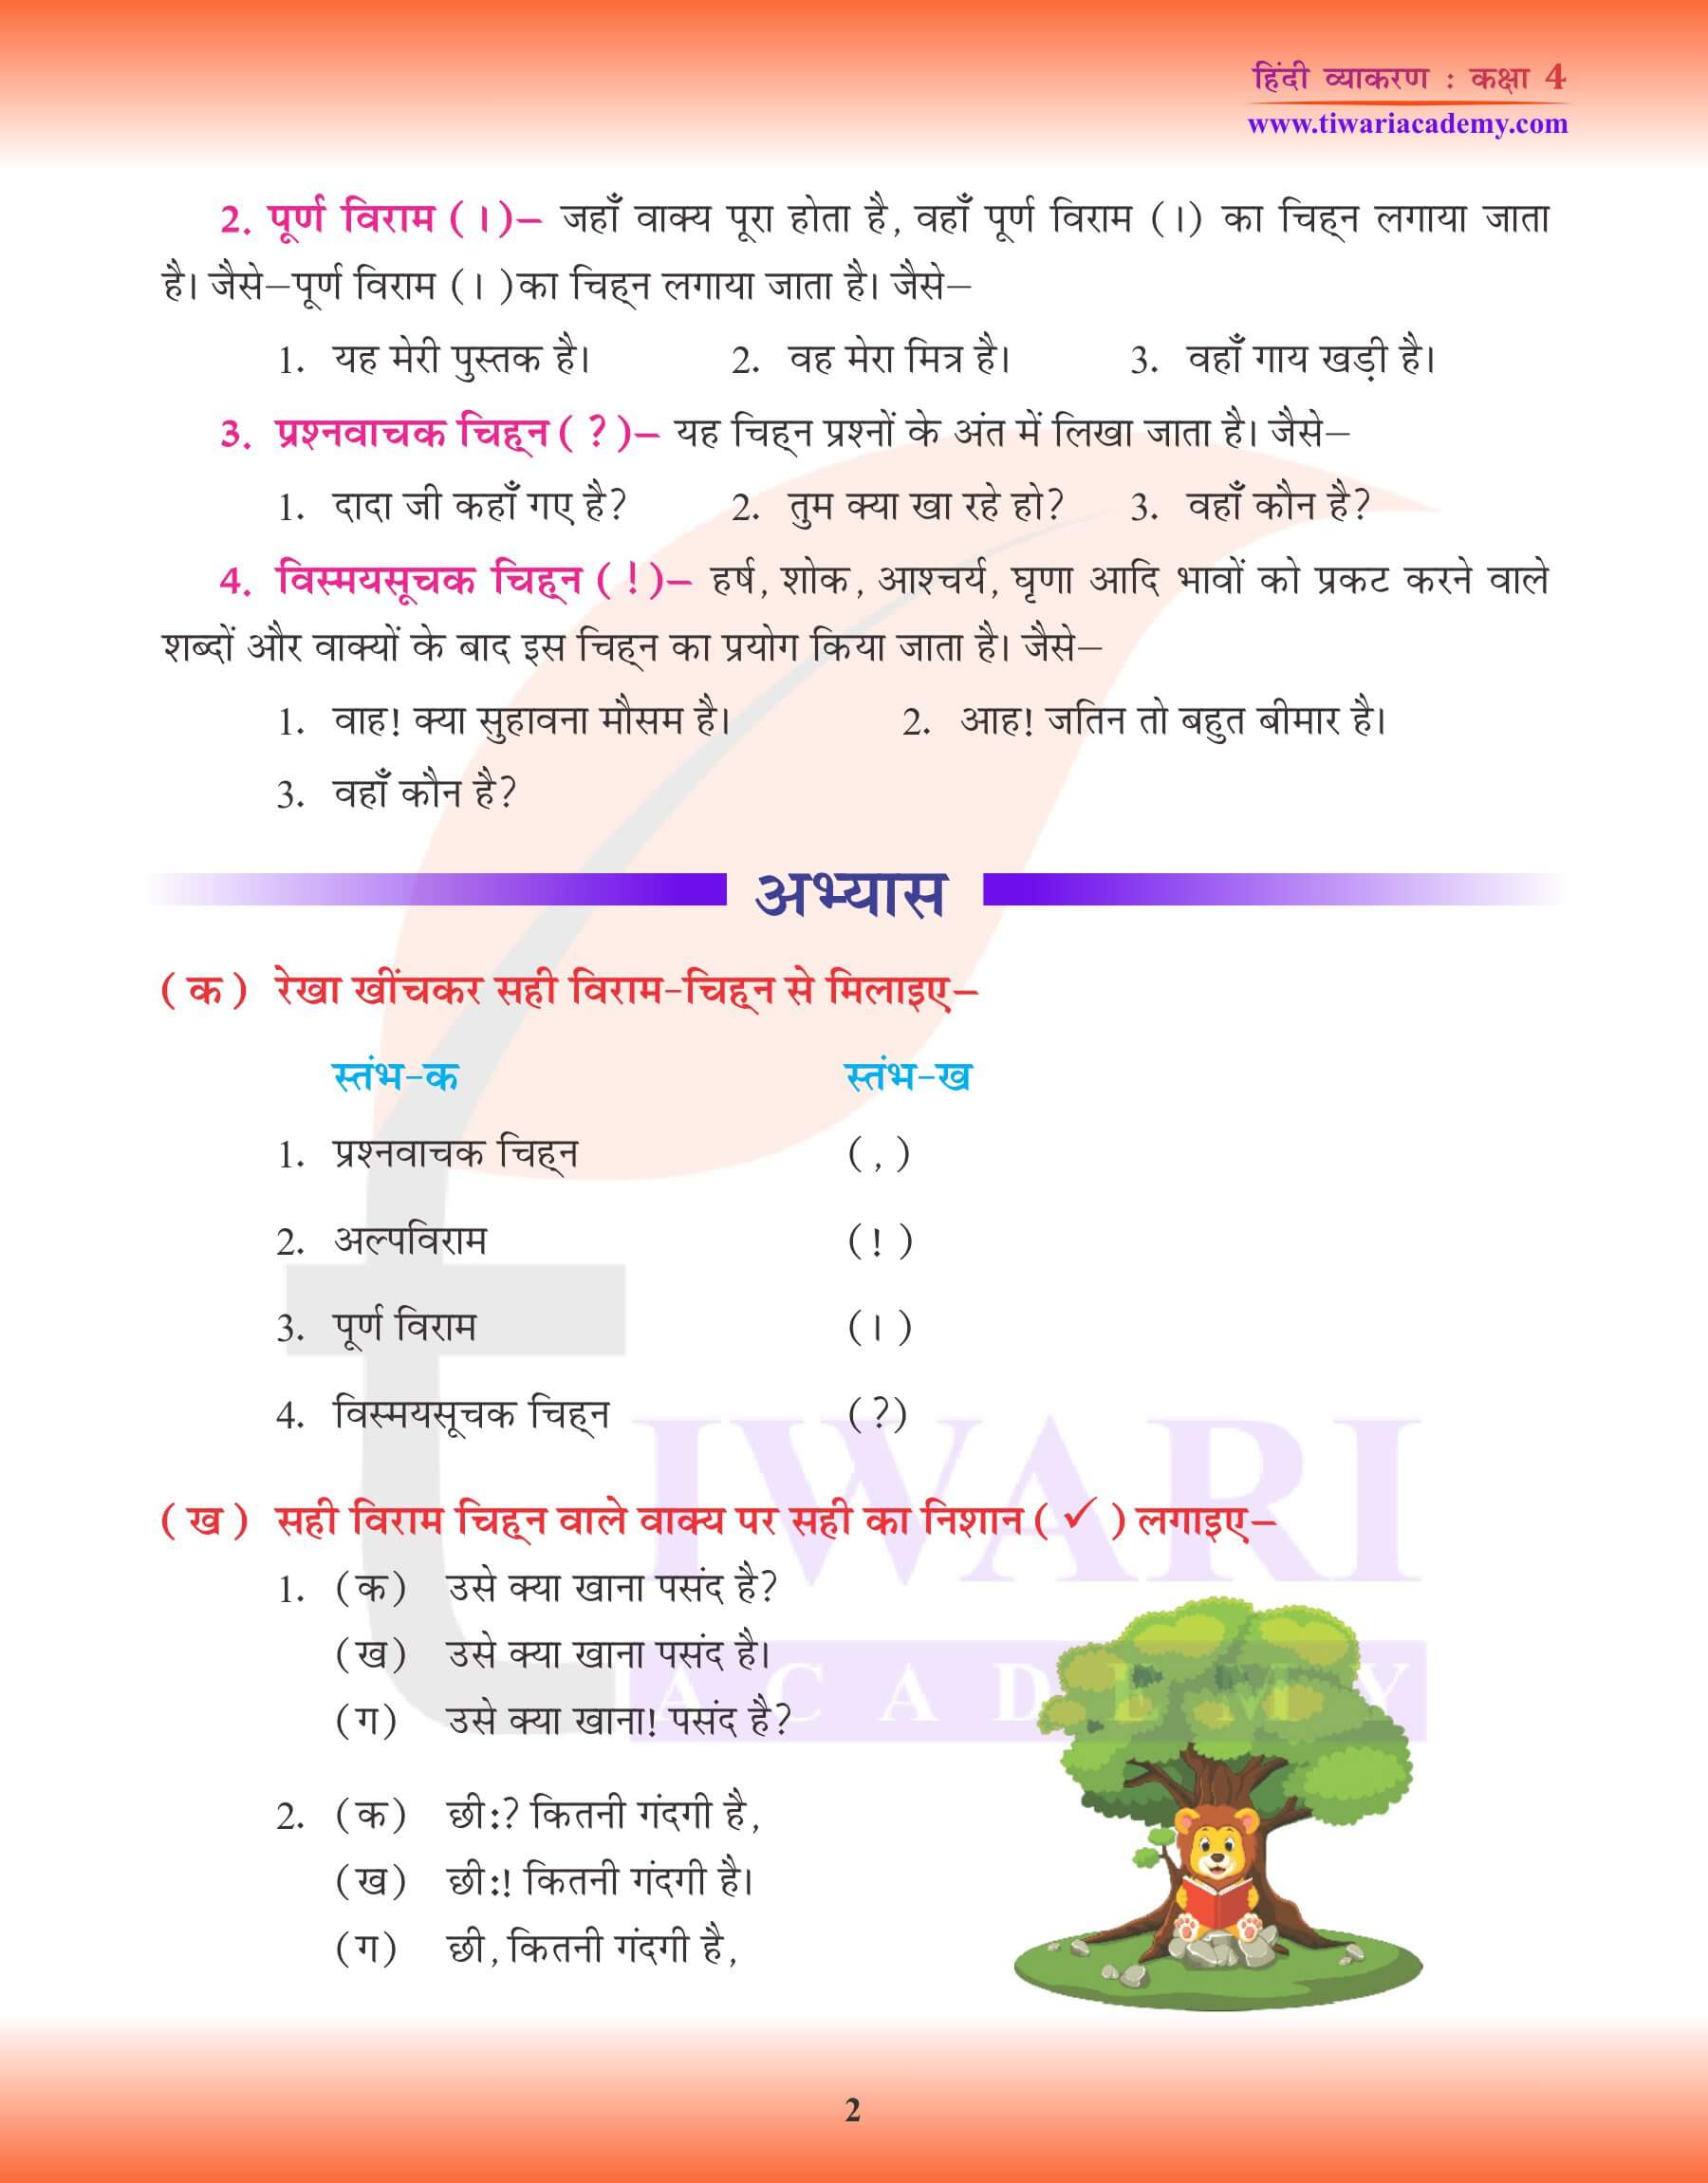 कक्षा 4 हिंदी व्याकरण में विराम चिन्ह